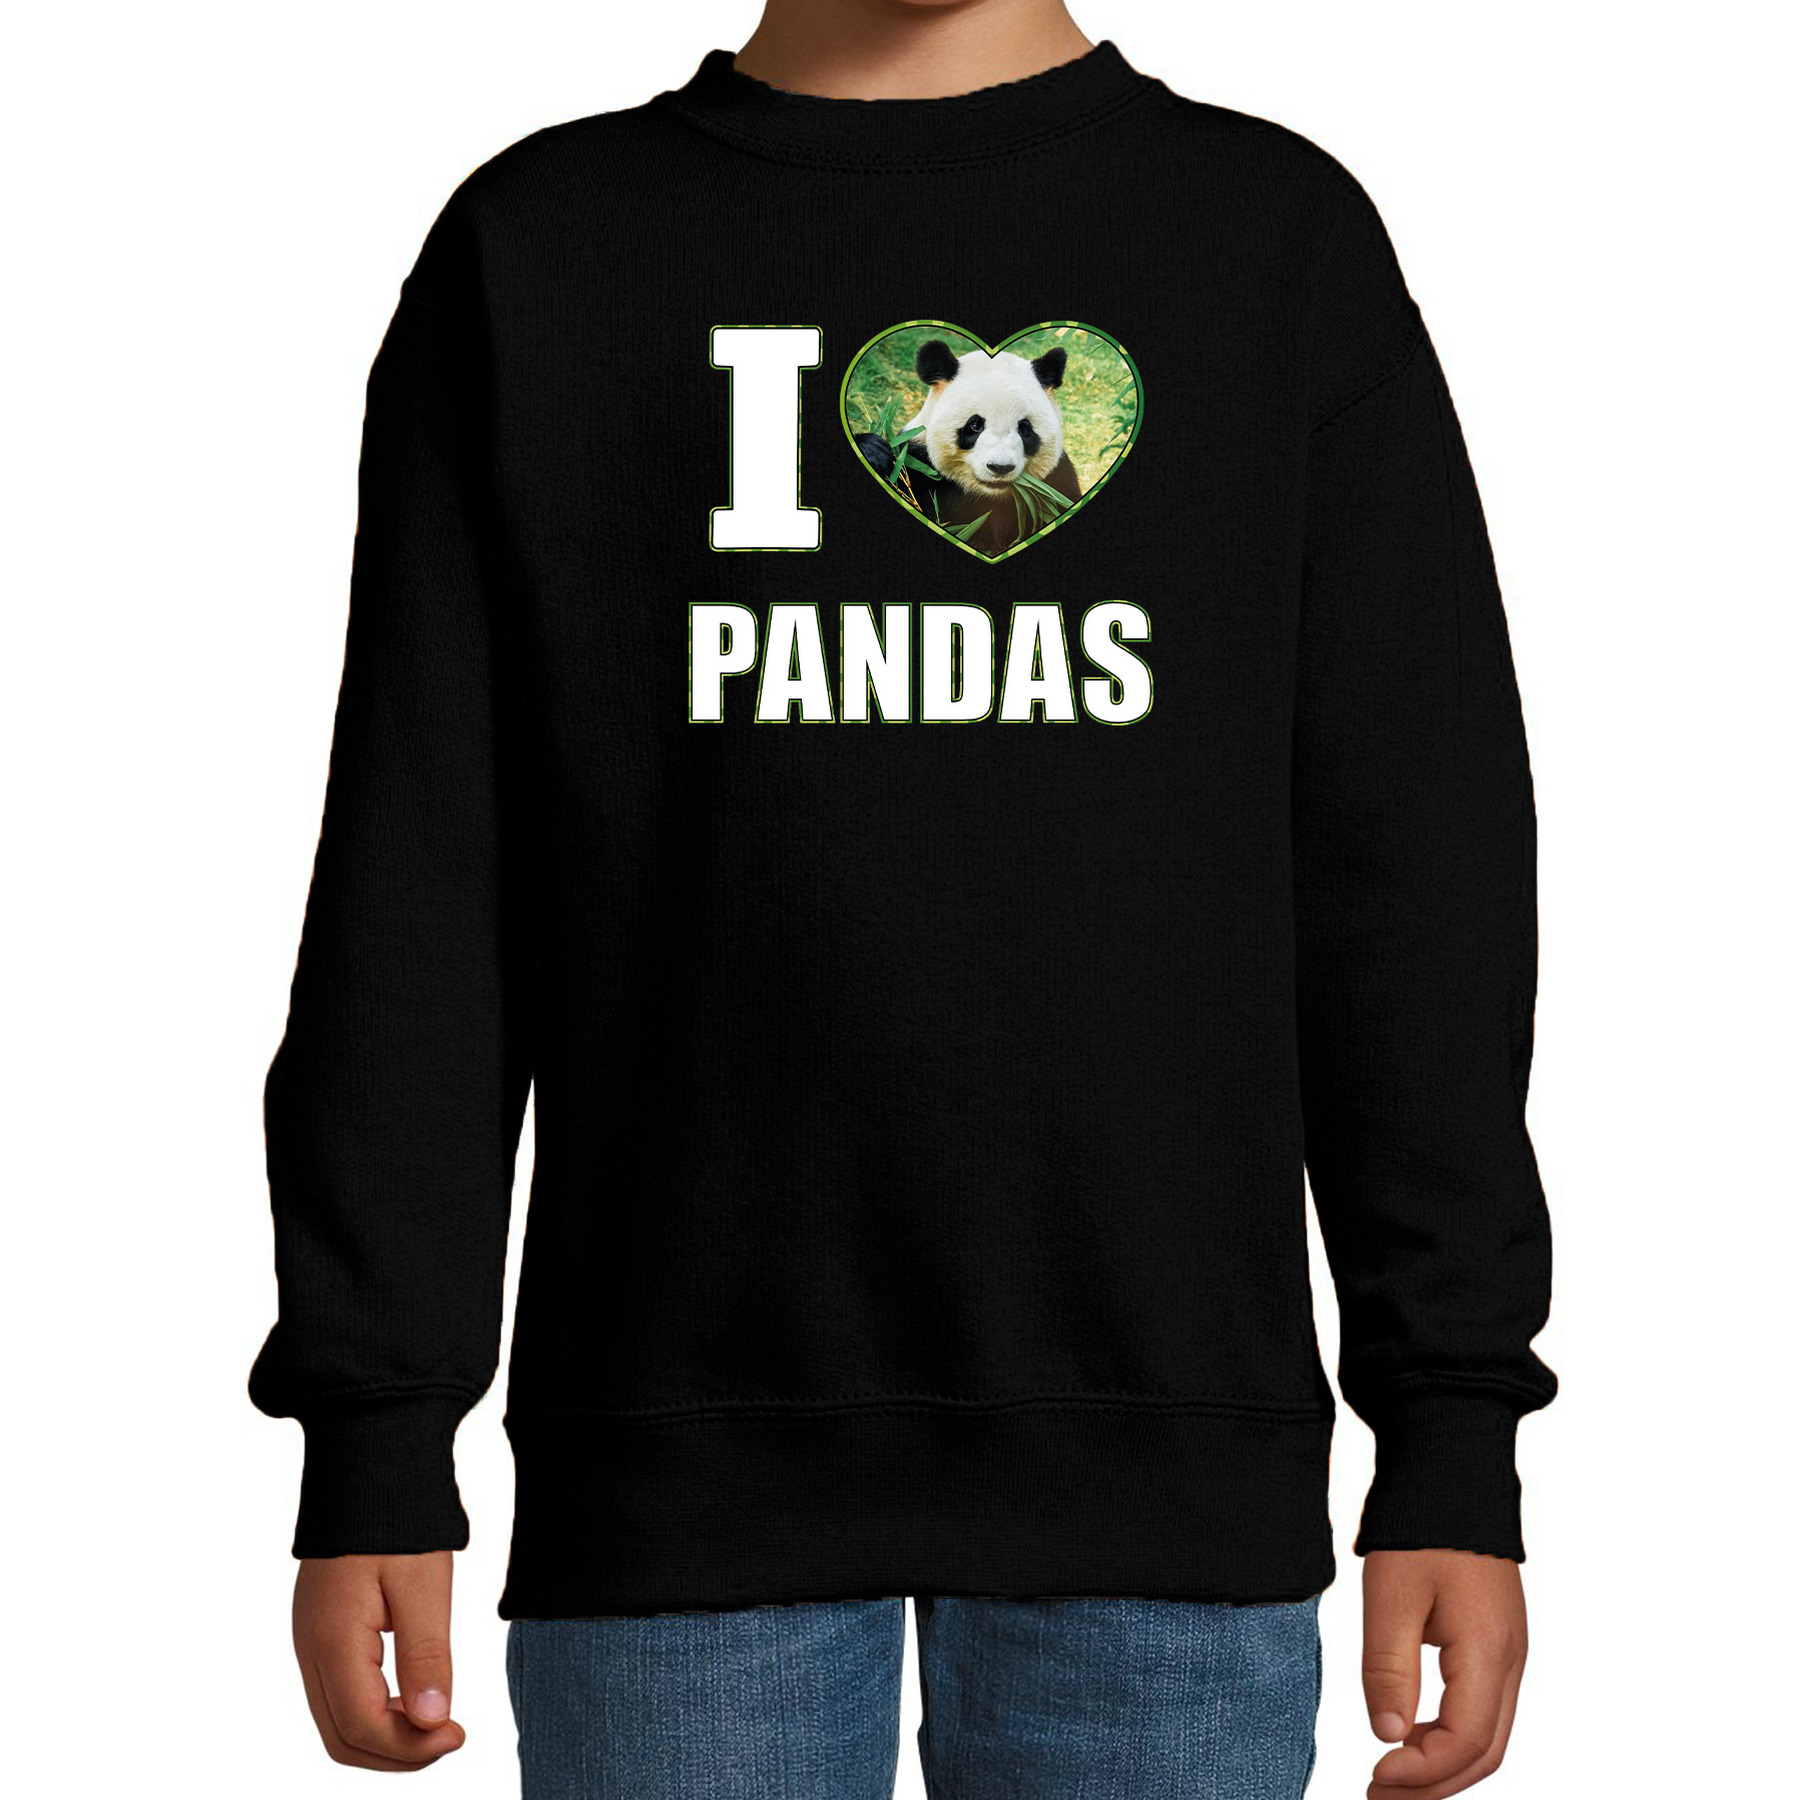 I love pandas sweater / trui met dieren foto van een panda zwart voor kinderen